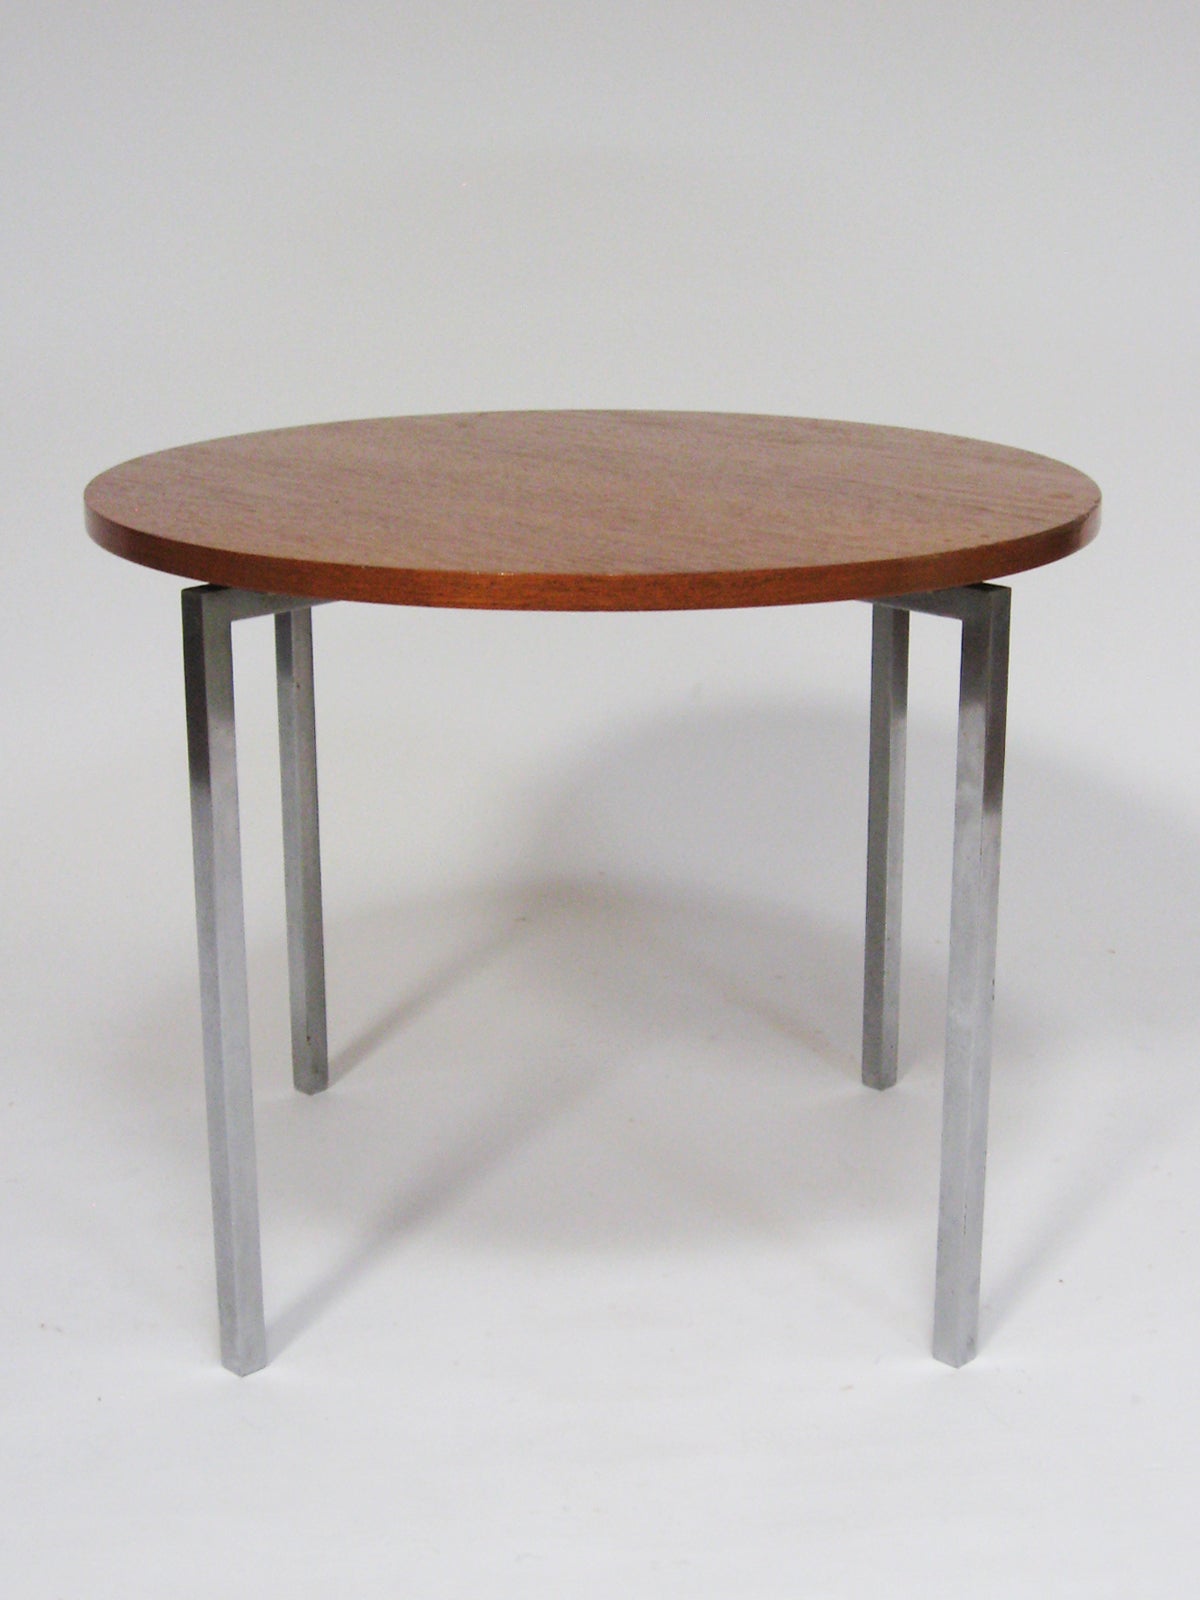 Cette superbe petite table conçue par Florence Knoll illustre parfaitement sa sensibilité au design très raffiné et la qualité de la production Knoll vintage. Le plateau rond en teck est soutenu par une base en acier massif avec une finition en